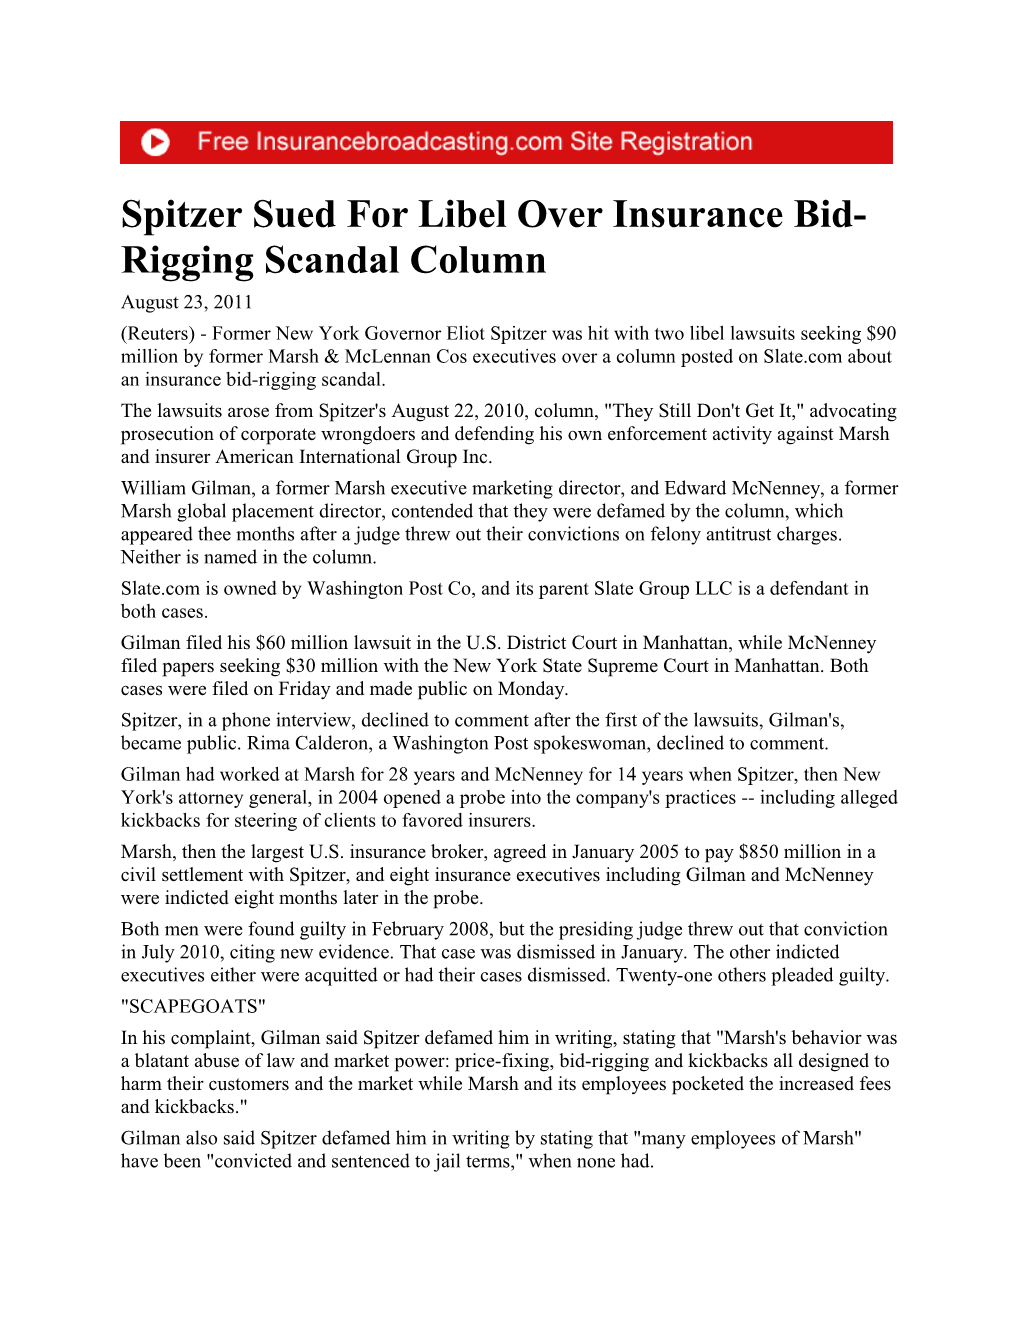 Spitzer Sued for Libel Over Insurance Bid-Rigging Scandal Column